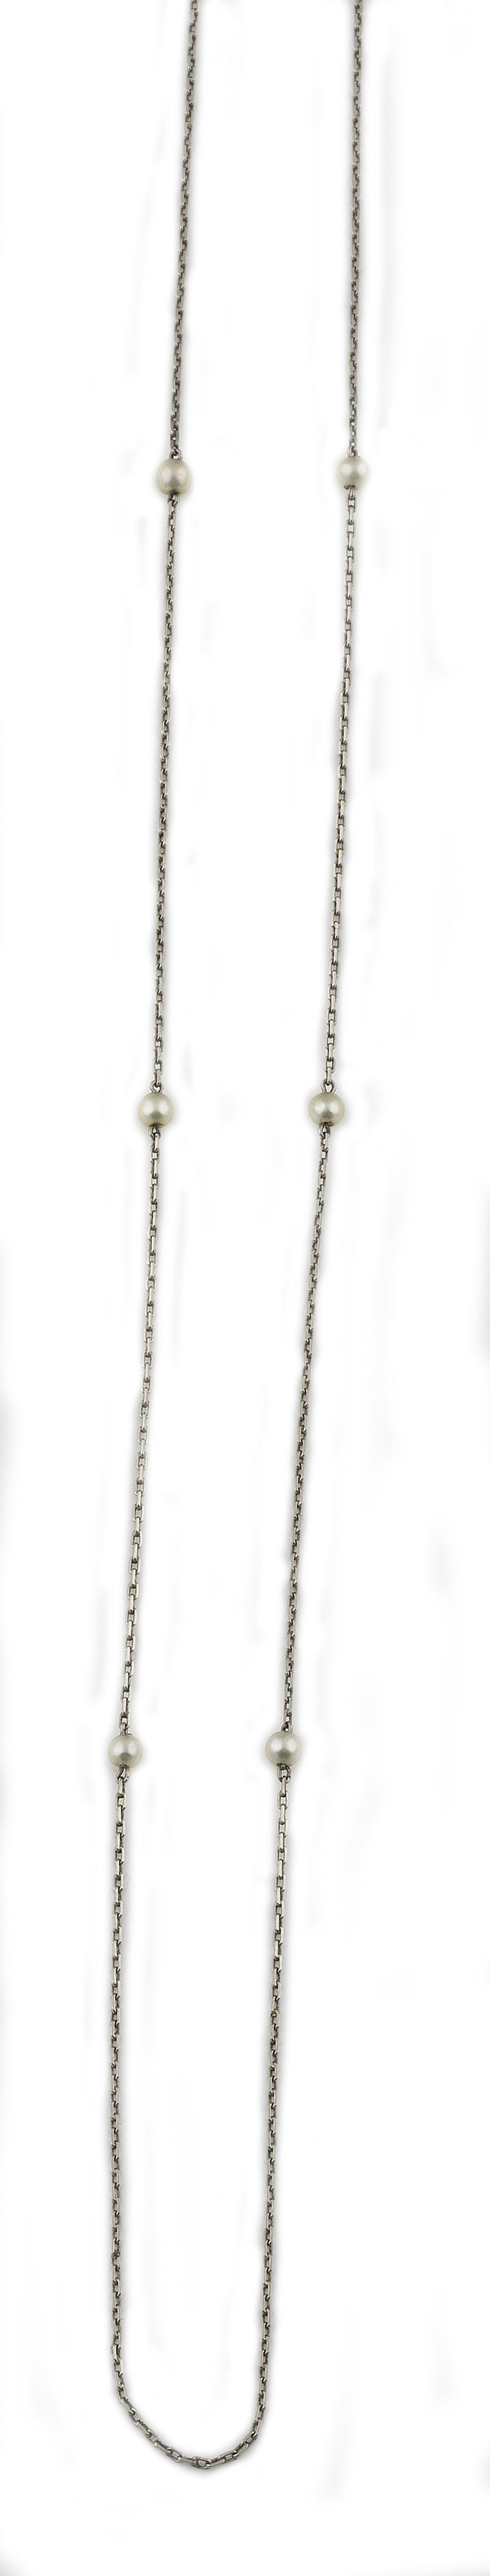 Broche colgante Belle époque con diseño de lazos y cintas entrelazados de diamantes con gran - Image 2 of 2